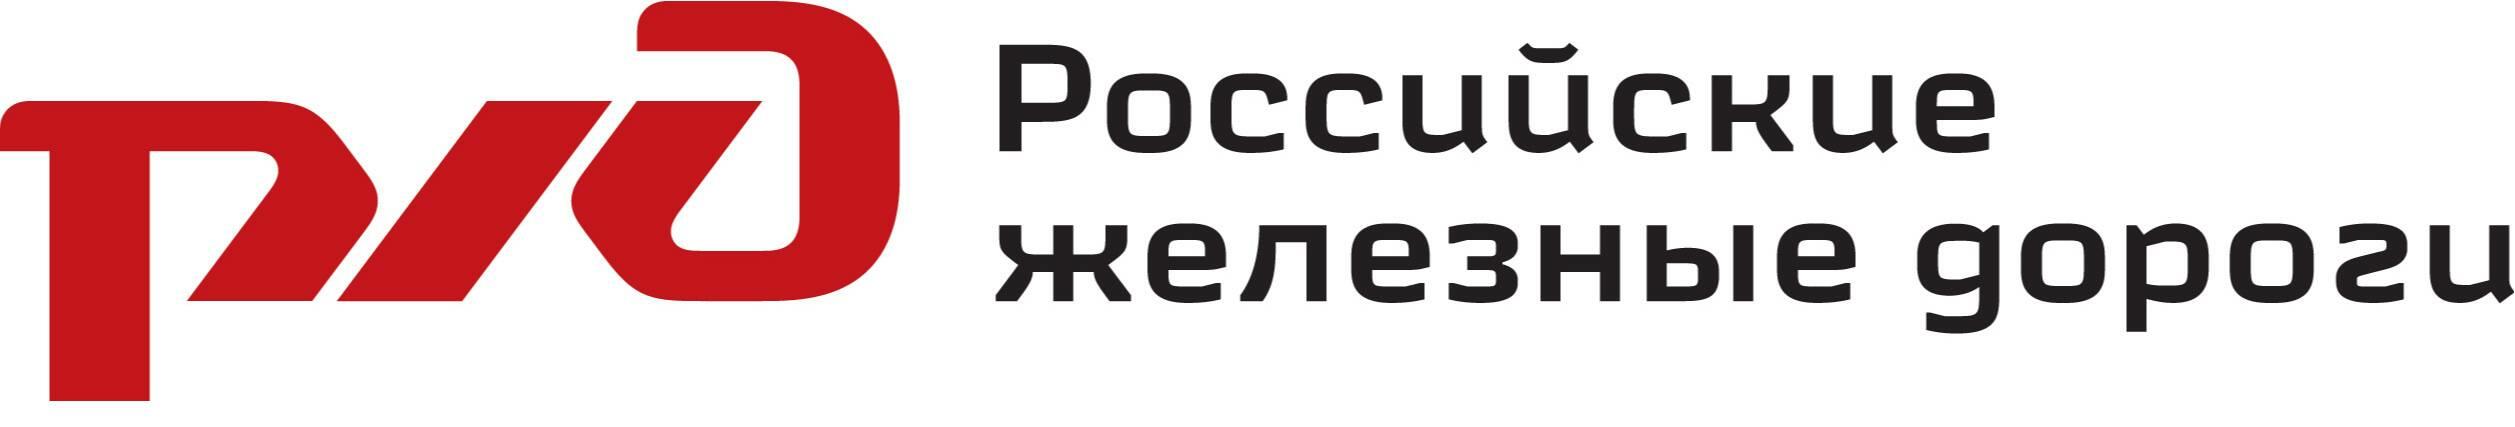 Российские железные дороги логотип на прозрачном фоне